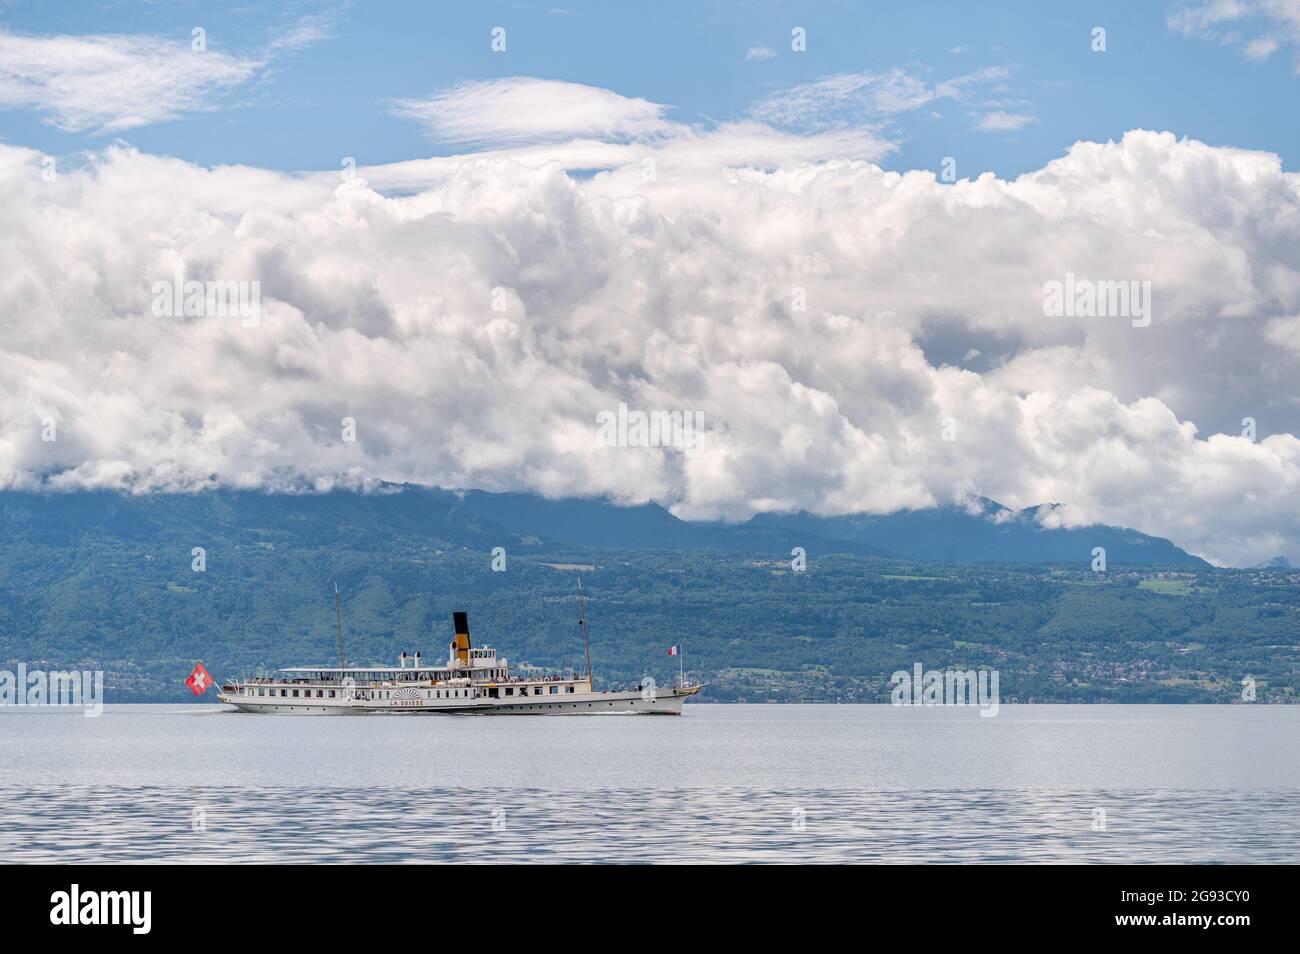 Lausanne, canton de Vaud, Suisse - 07.07.2021: Bateau à vapeur Suisse avec passagers sur le lac Léman par temps ensoleillé. Bateau CGN. Banque D'Images